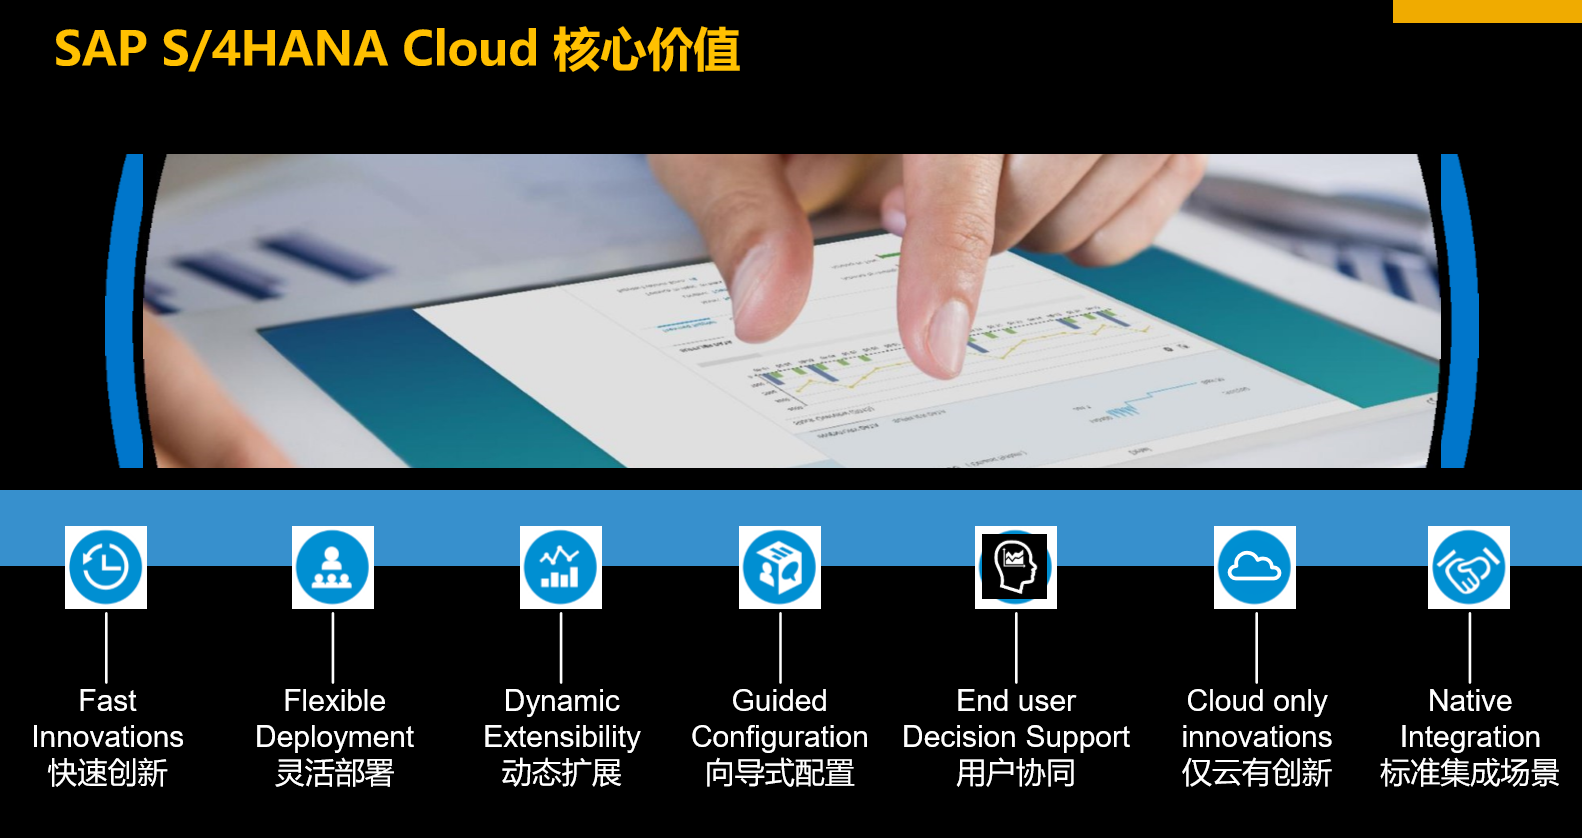 SAP S/4HANA Public Cloud 